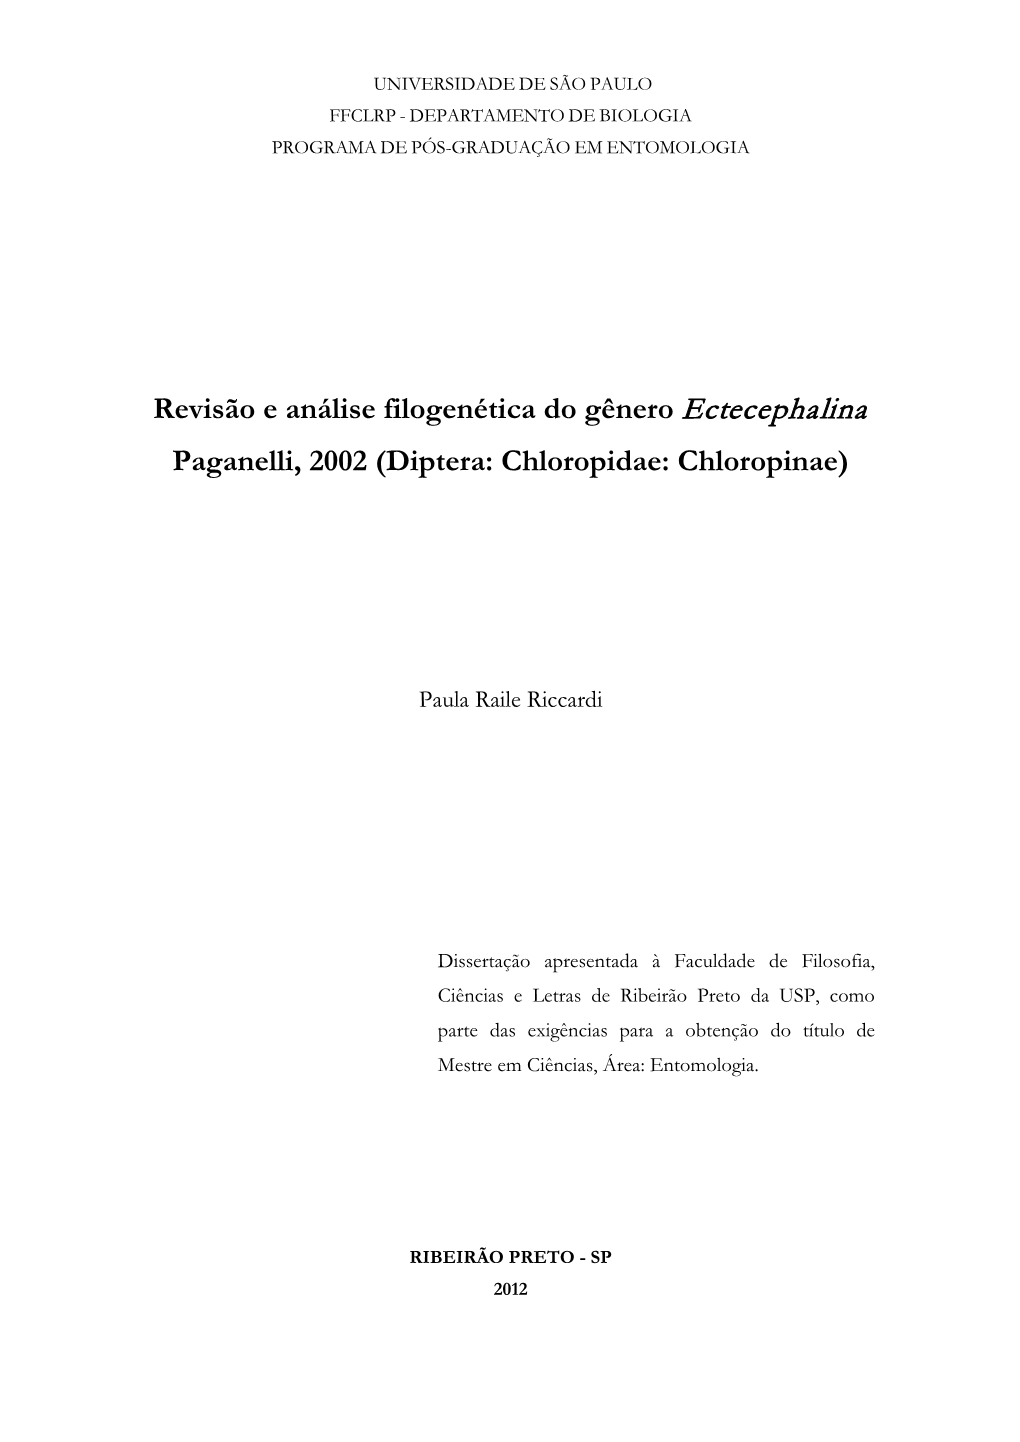 Revisão E Análise Filogenética Do Gênero Ectecephalina Paganelli, 2002 (Diptera: Chloropidae: Chloropinae)